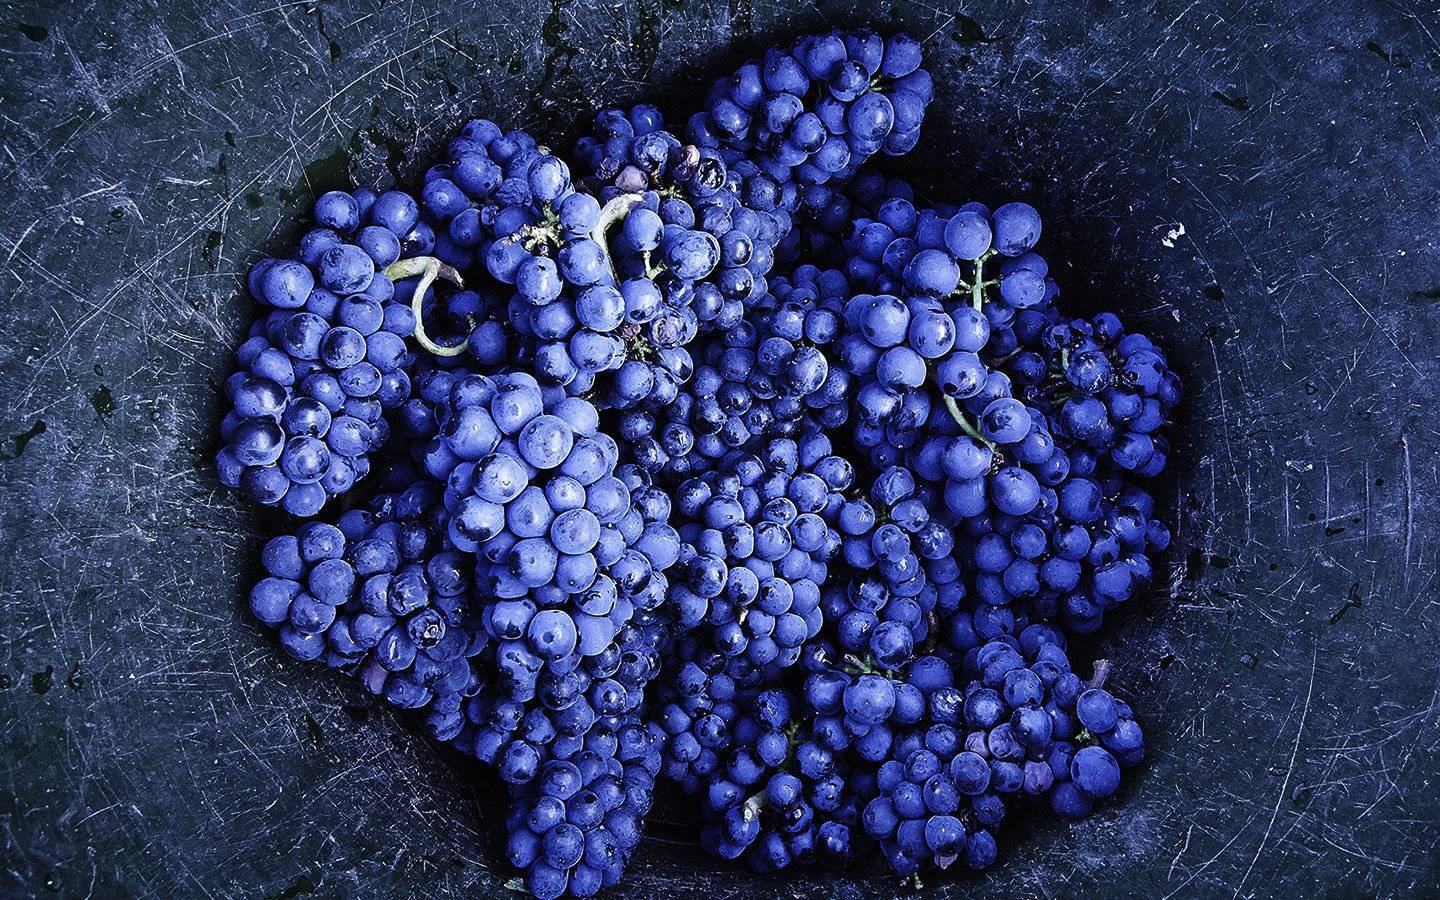 常见的5大红葡萄品种有哪些典型风味？